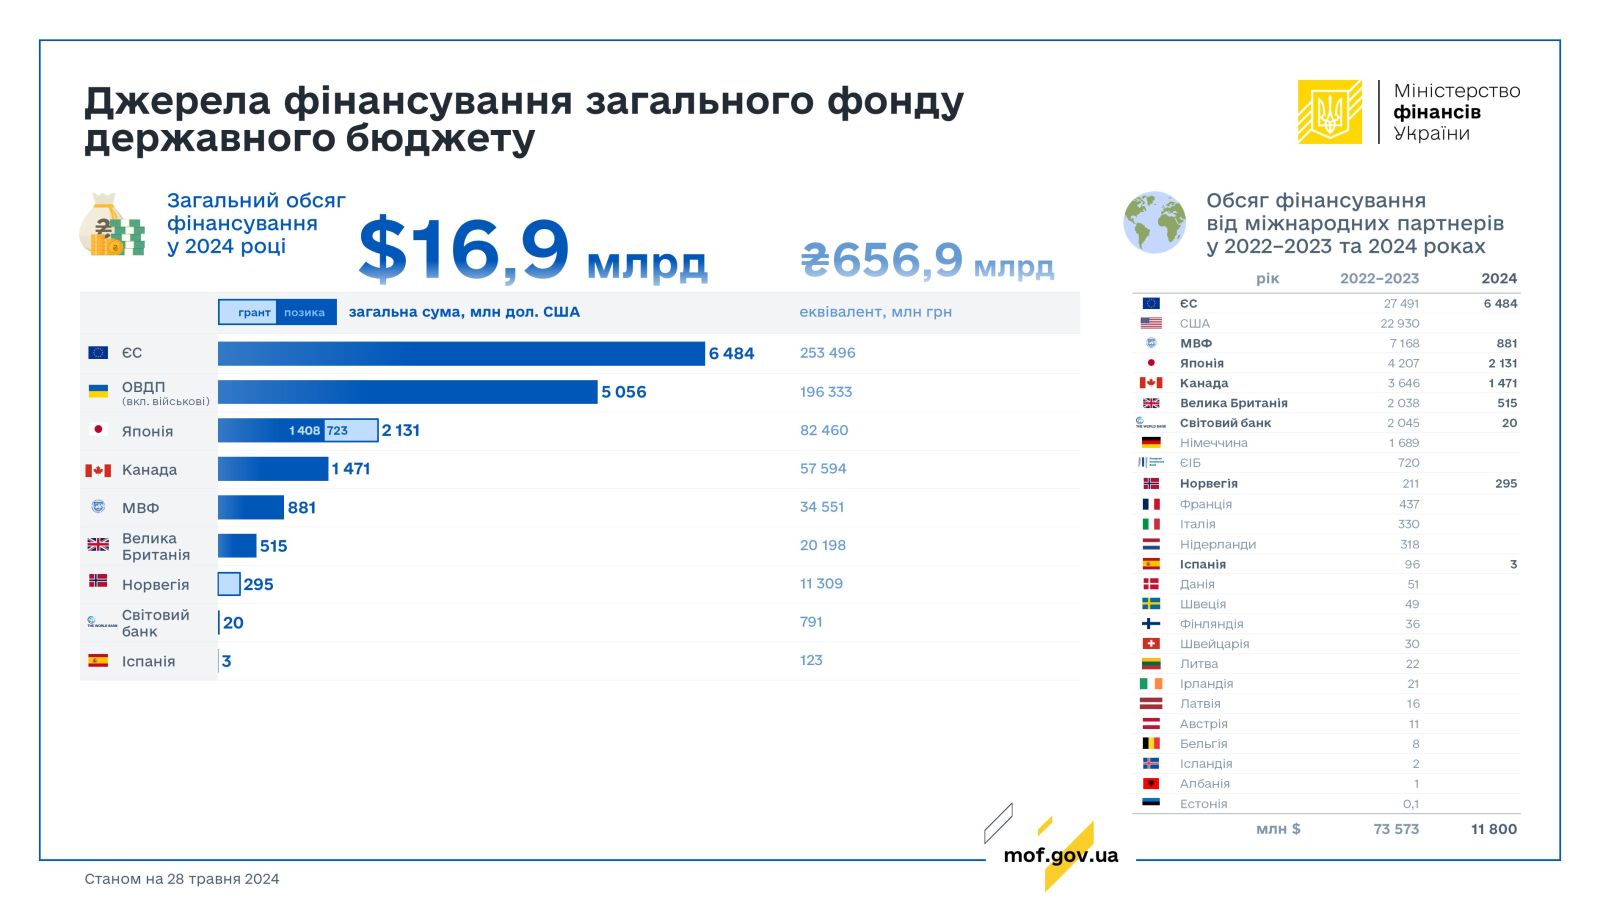 Скільки грошей дали Україні міжнародні партнери від початку повномасштабної війни